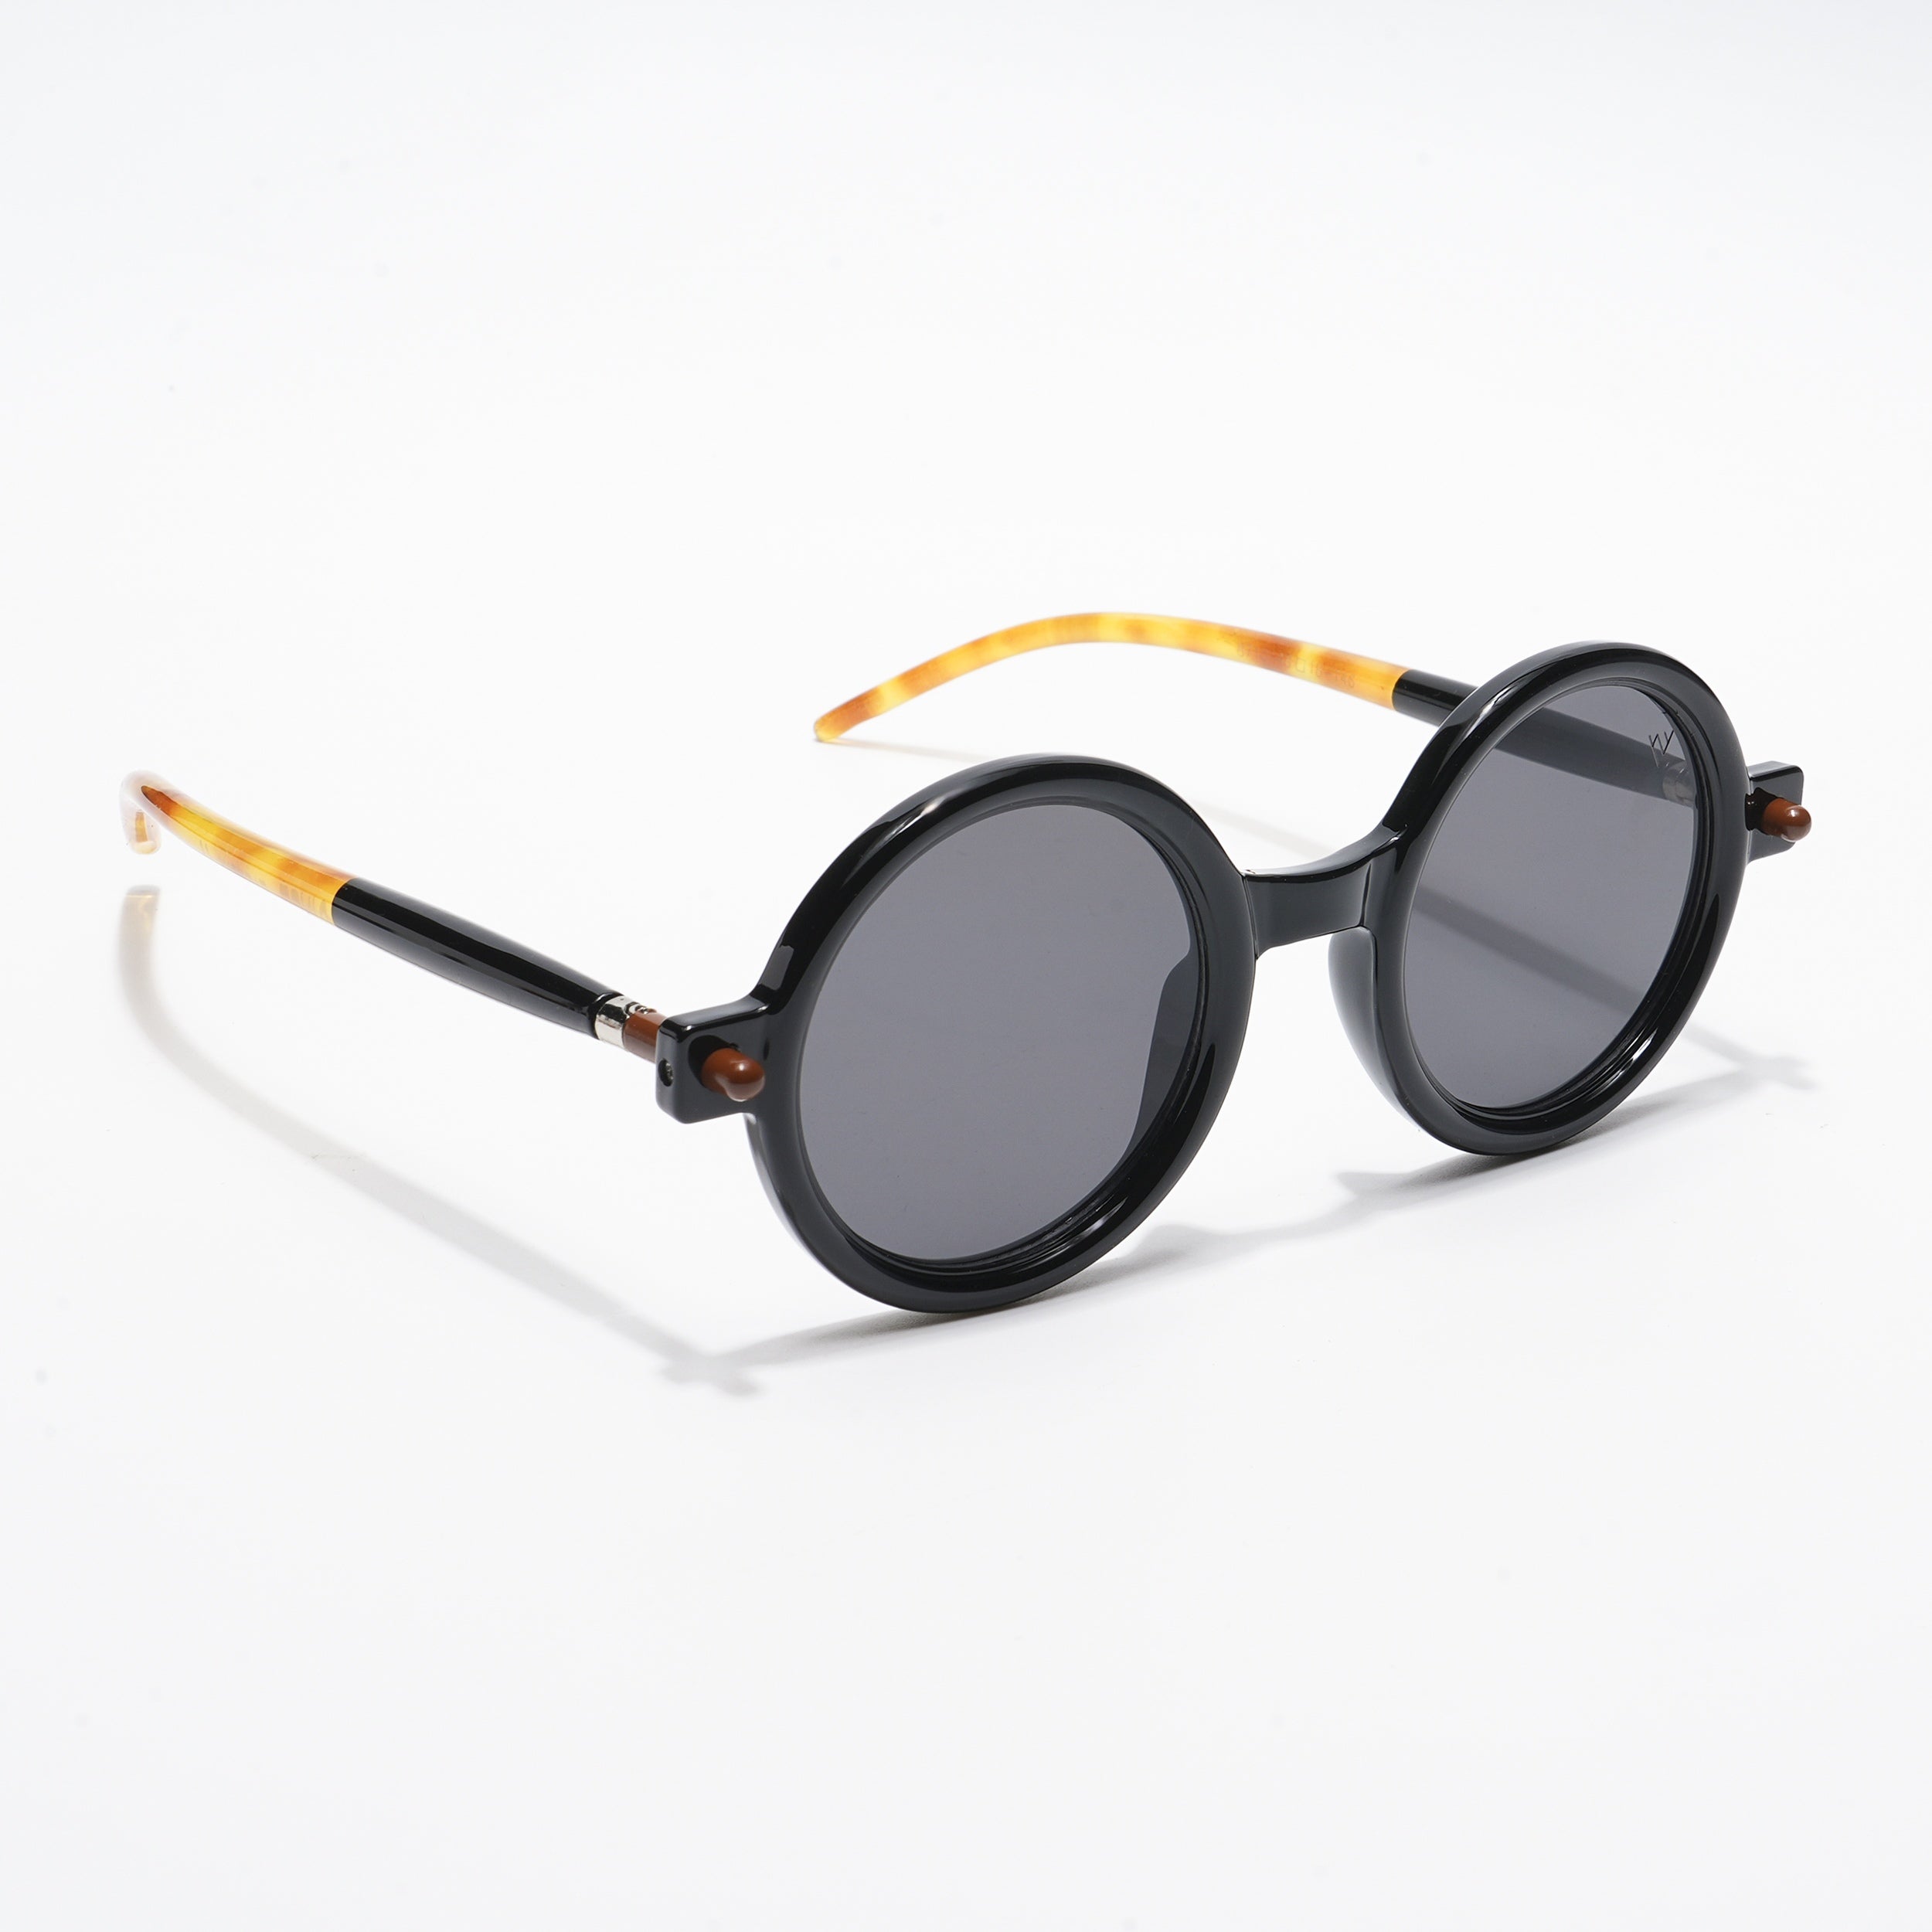 Voyage Round Sunglasses for Men & Women (Black Lens | Black Frame - MG5177)